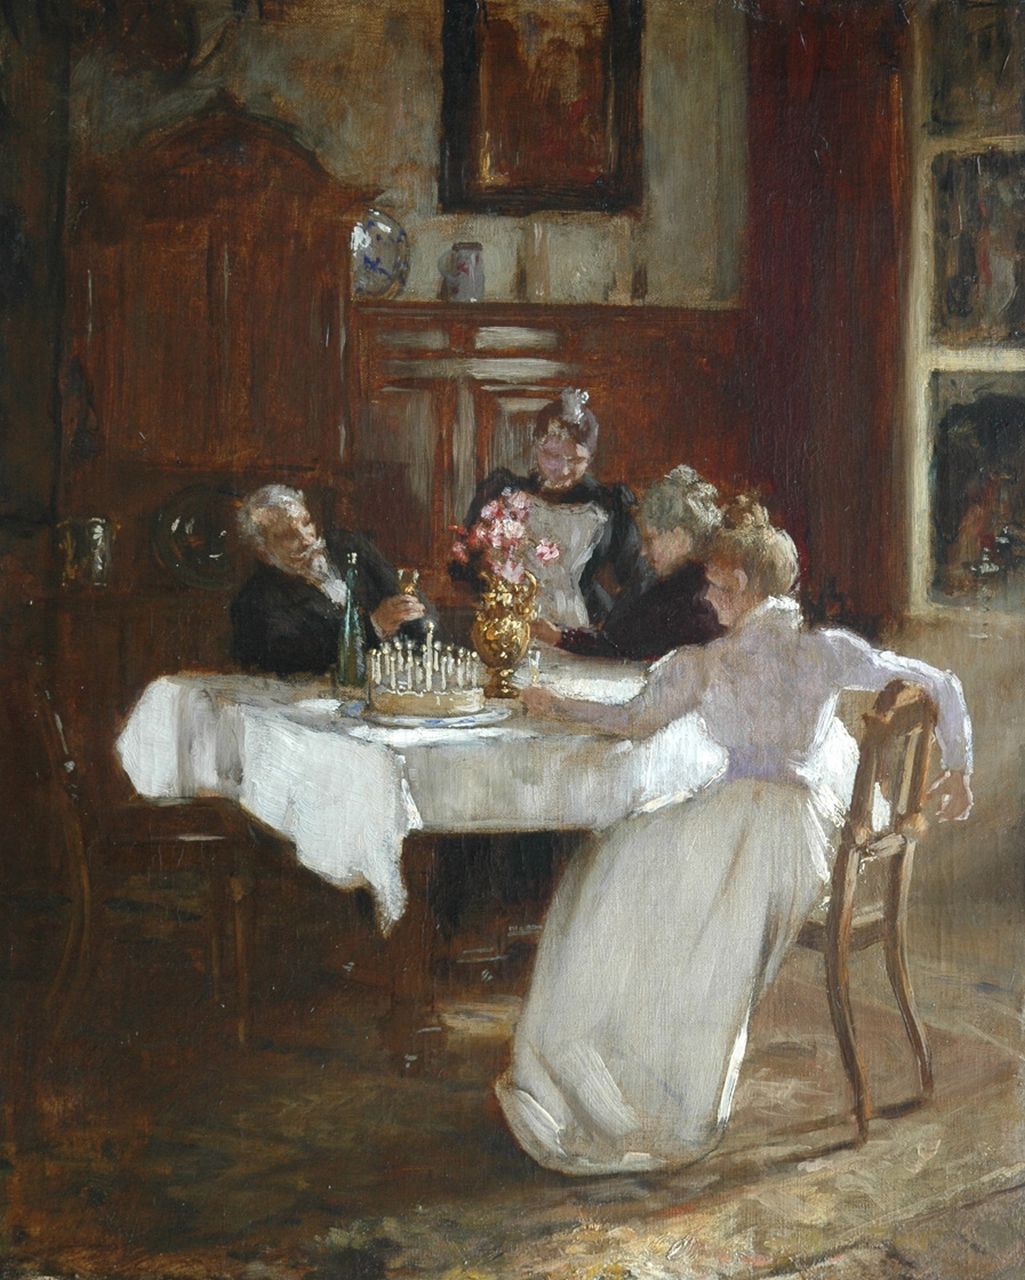 Hugo Crola | The birthday party, Öl auf Leinwand, 59,5 x 48,1 cm, painted circa 1898